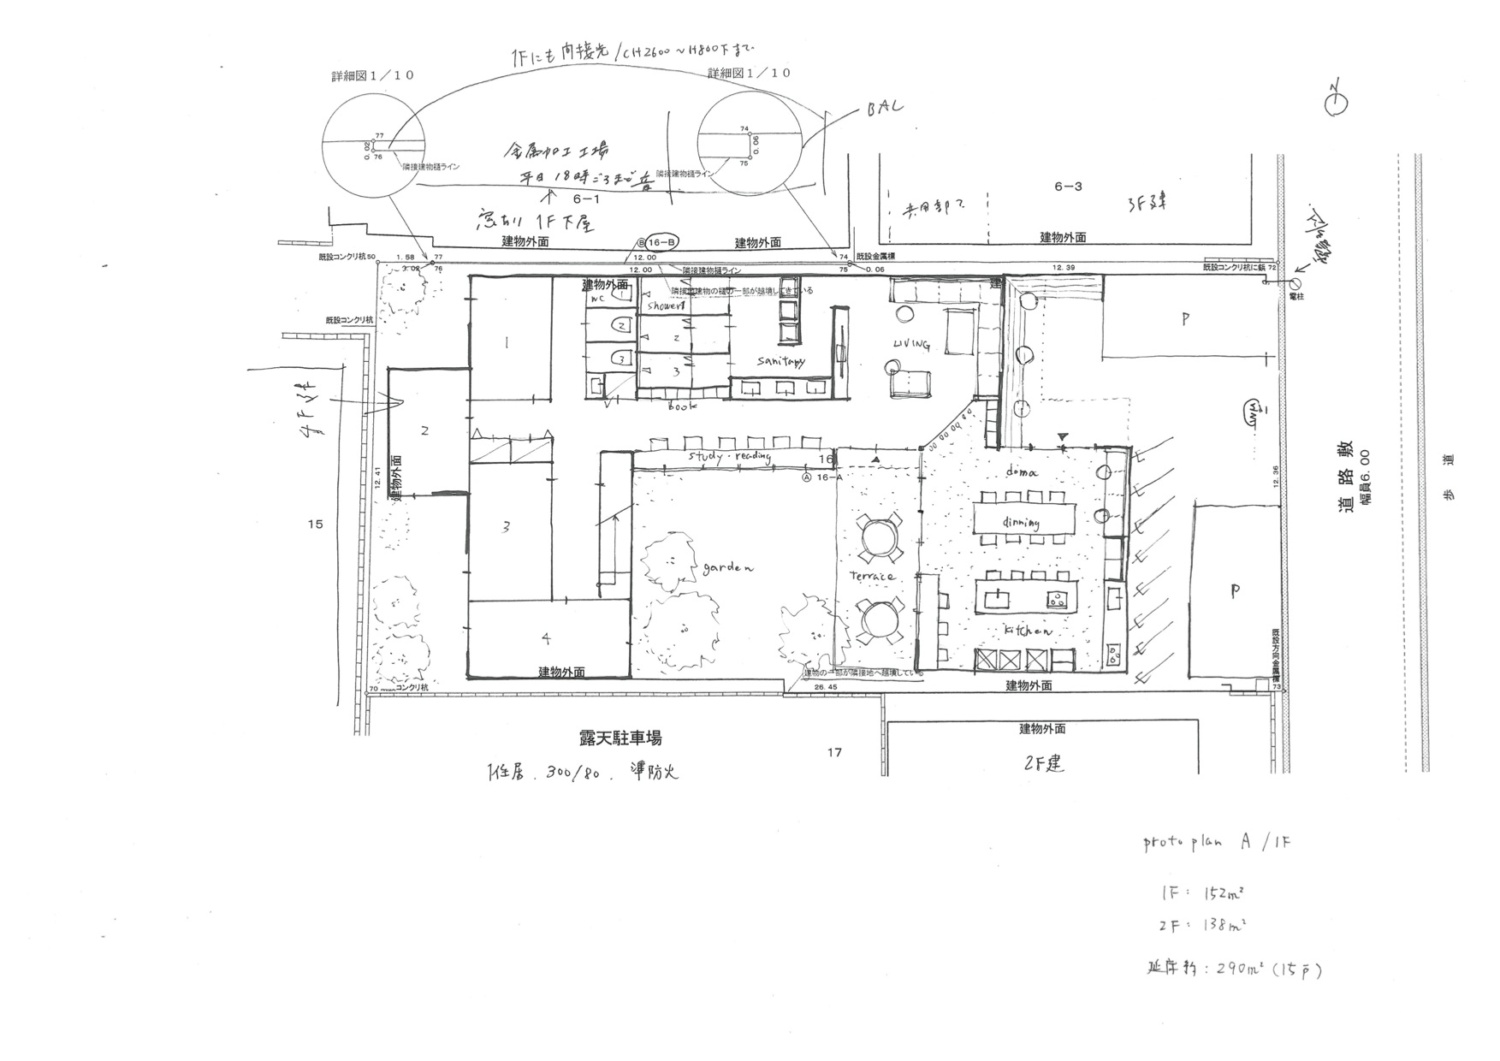 新築シェアハウス第4弾 Haya Osaka 図面の作り方 Tesen